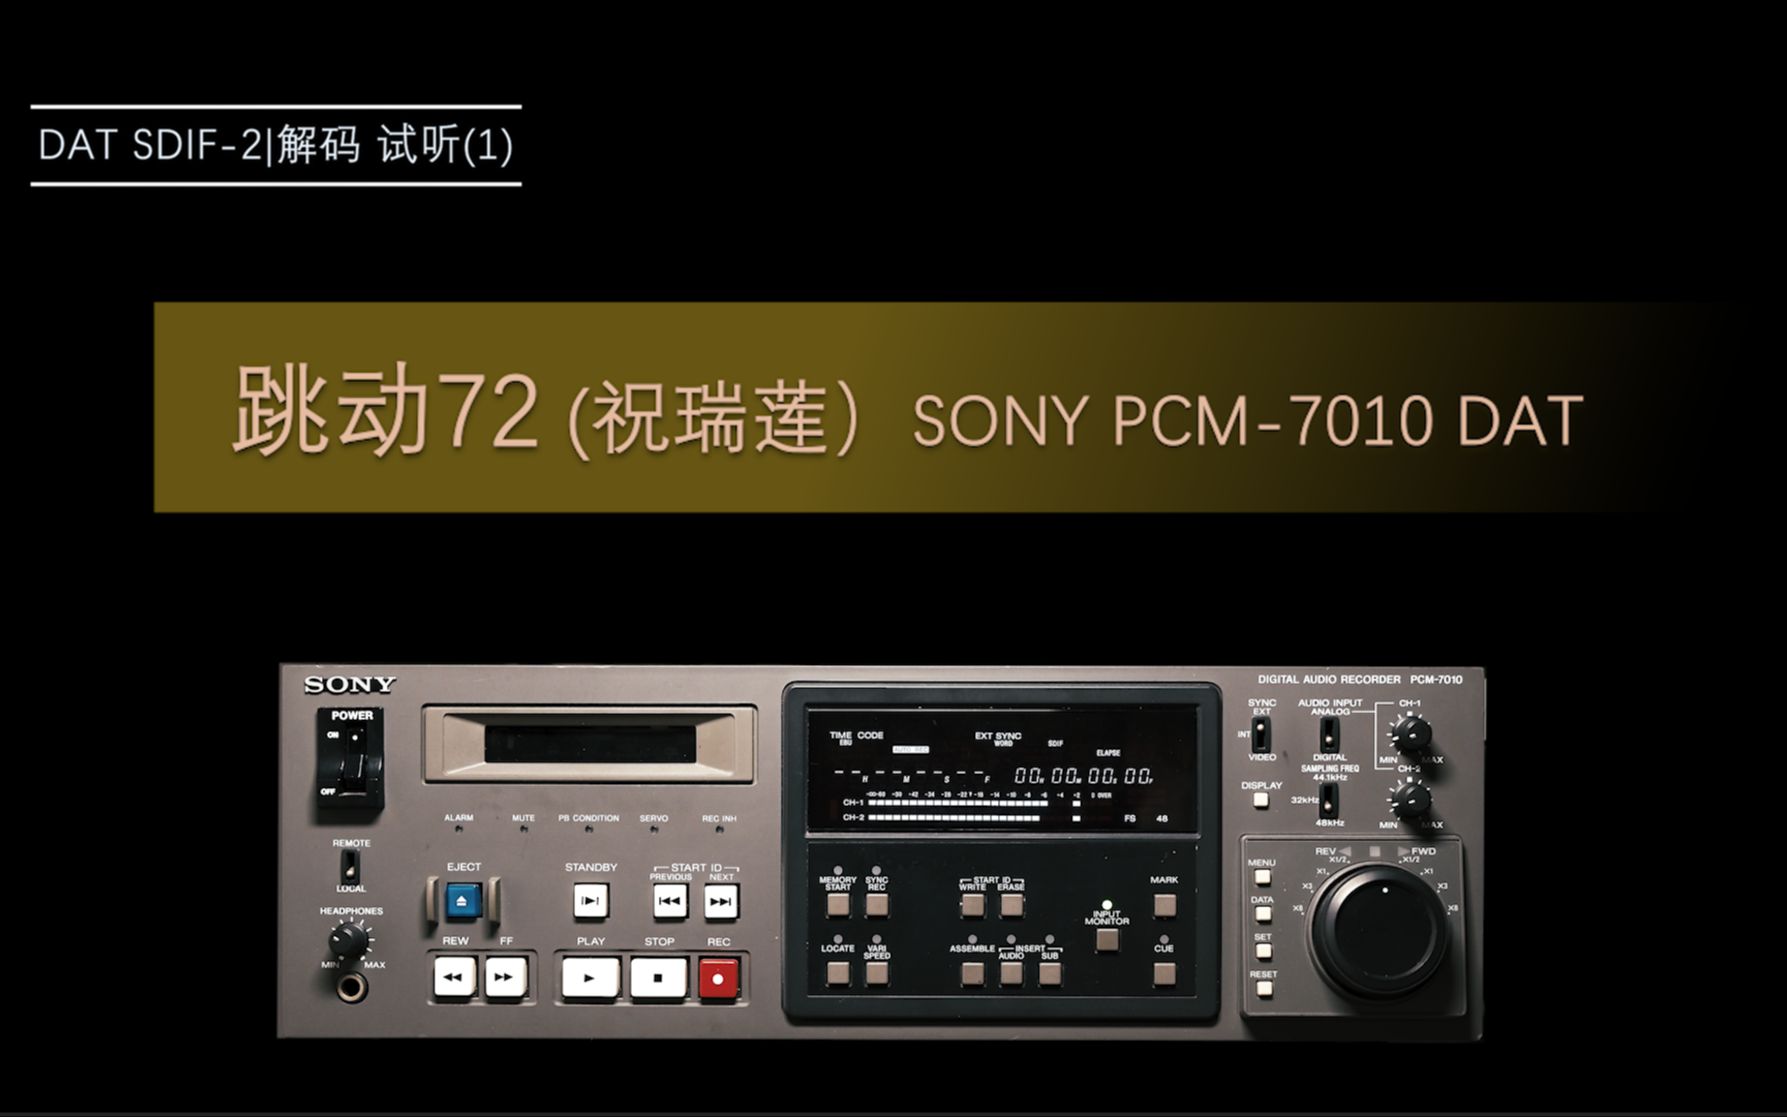 [图]【DAT欣赏】跳动72 (祝瑞莲）SONY PCM-7010 DAT 试听(1)